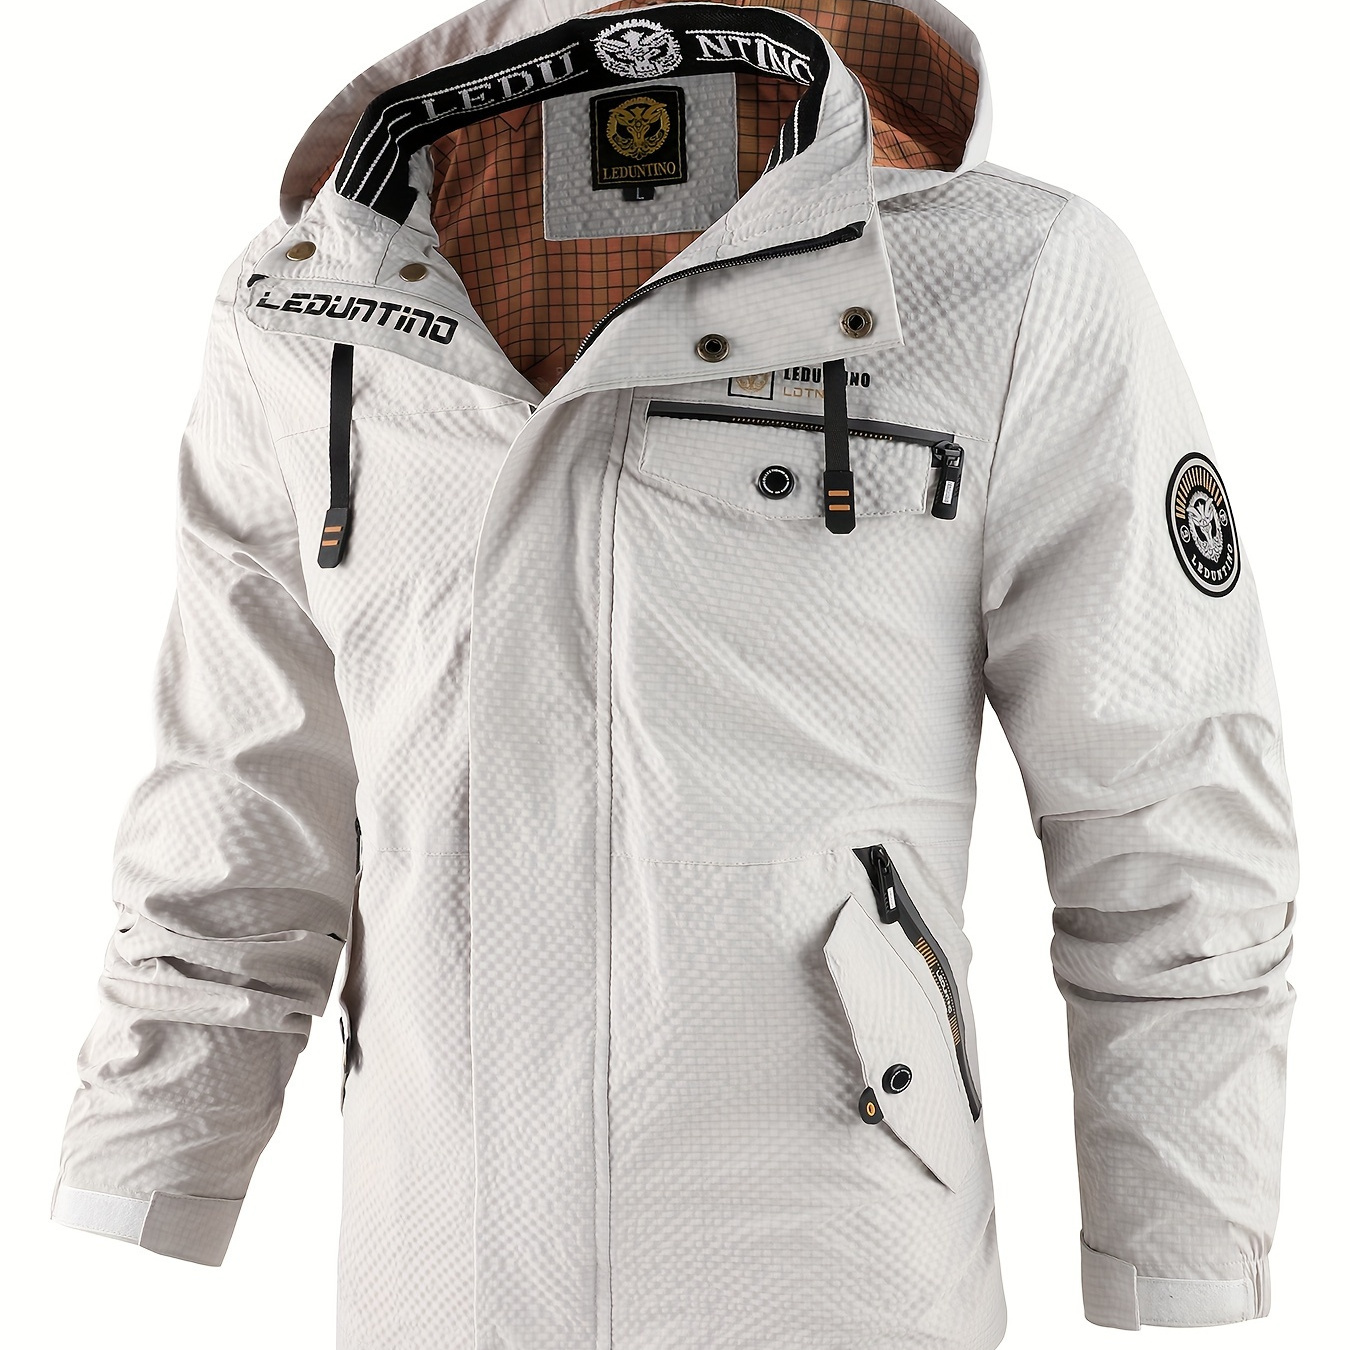 

Men's Casual Hooded Windbreaker Jacket, Chic Stand Collar Waterproof Jacket For Outdoor Activities